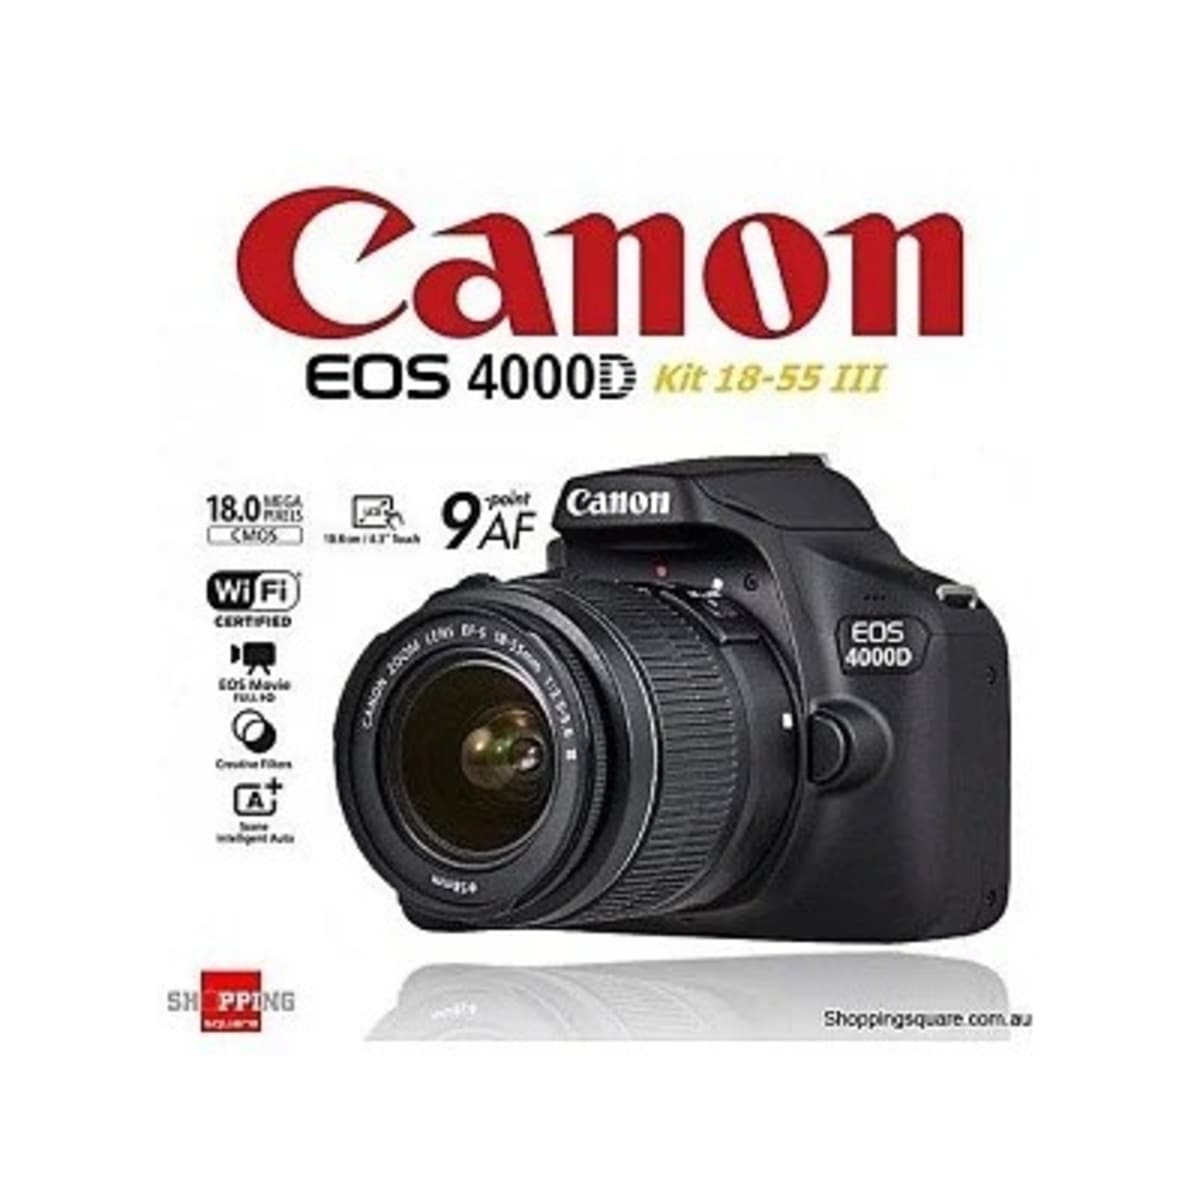 Canon Camera Eos 4000d Kit Konga Shopping